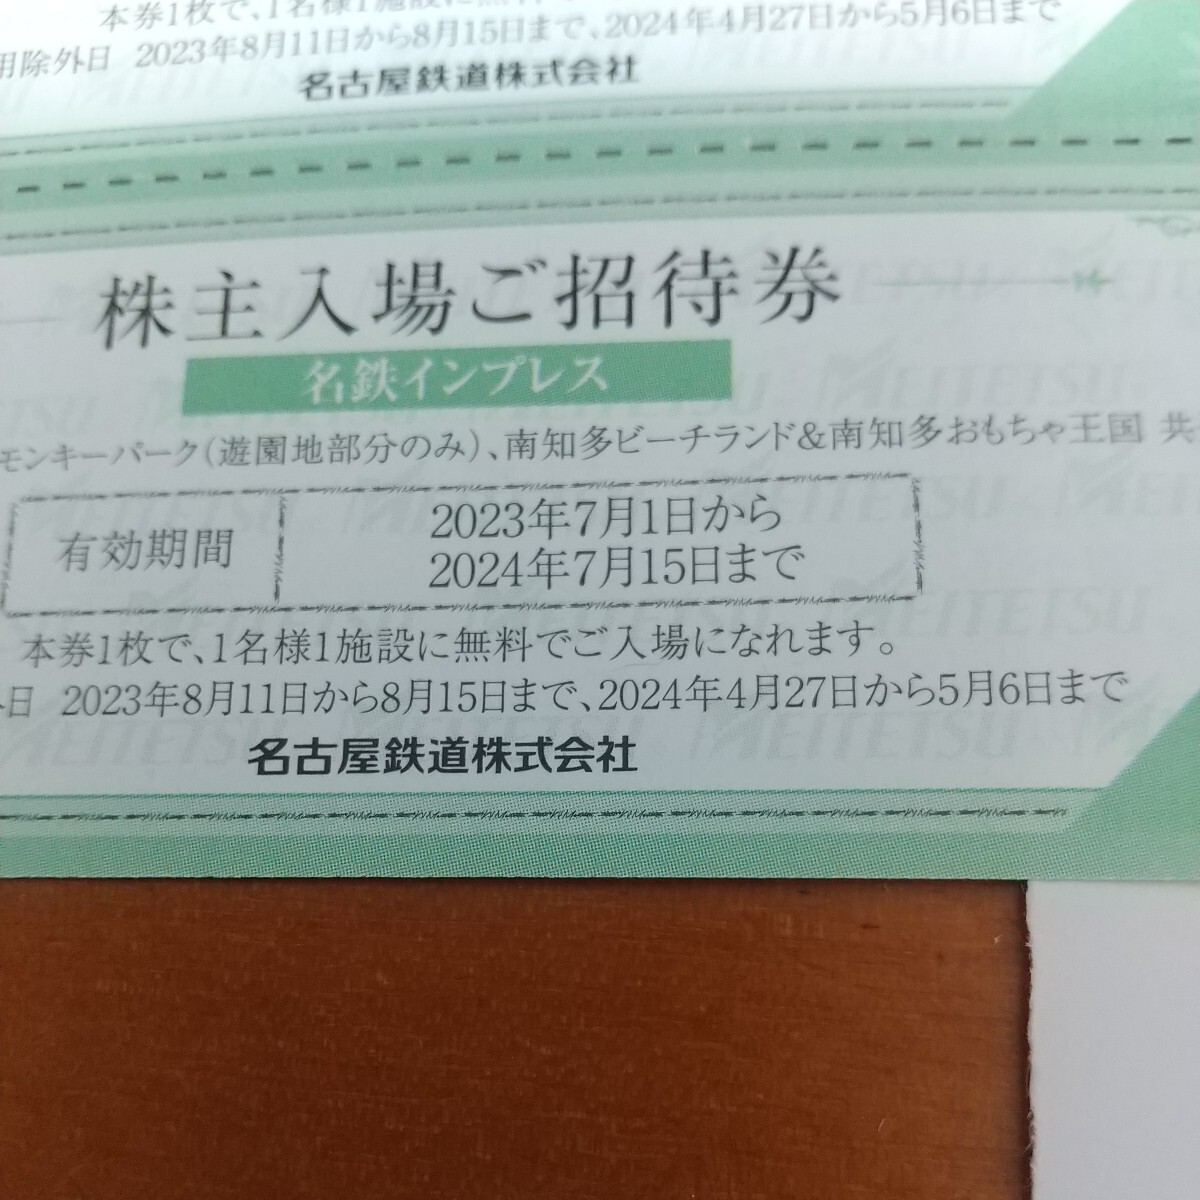 2 листов пара юг . много пляж Land Япония Monkey park стоимость доставки 63 иен из акционер пригласительный билет название металлический входить место приглашение талон гостеприимство 2024.7 до гадючий лук 